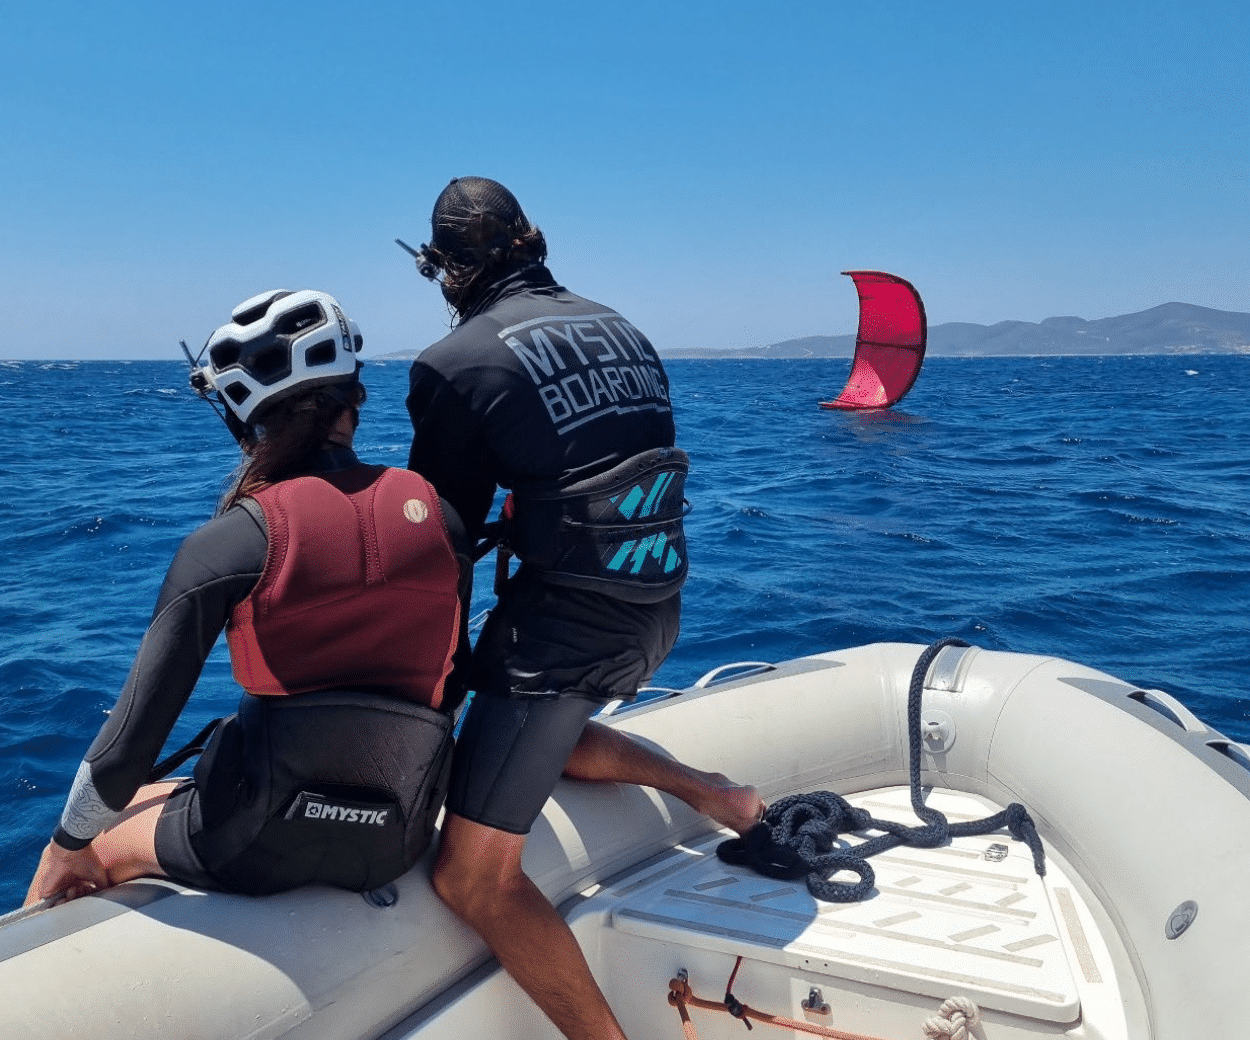 croisiere kitesurf grece sardaigne corse